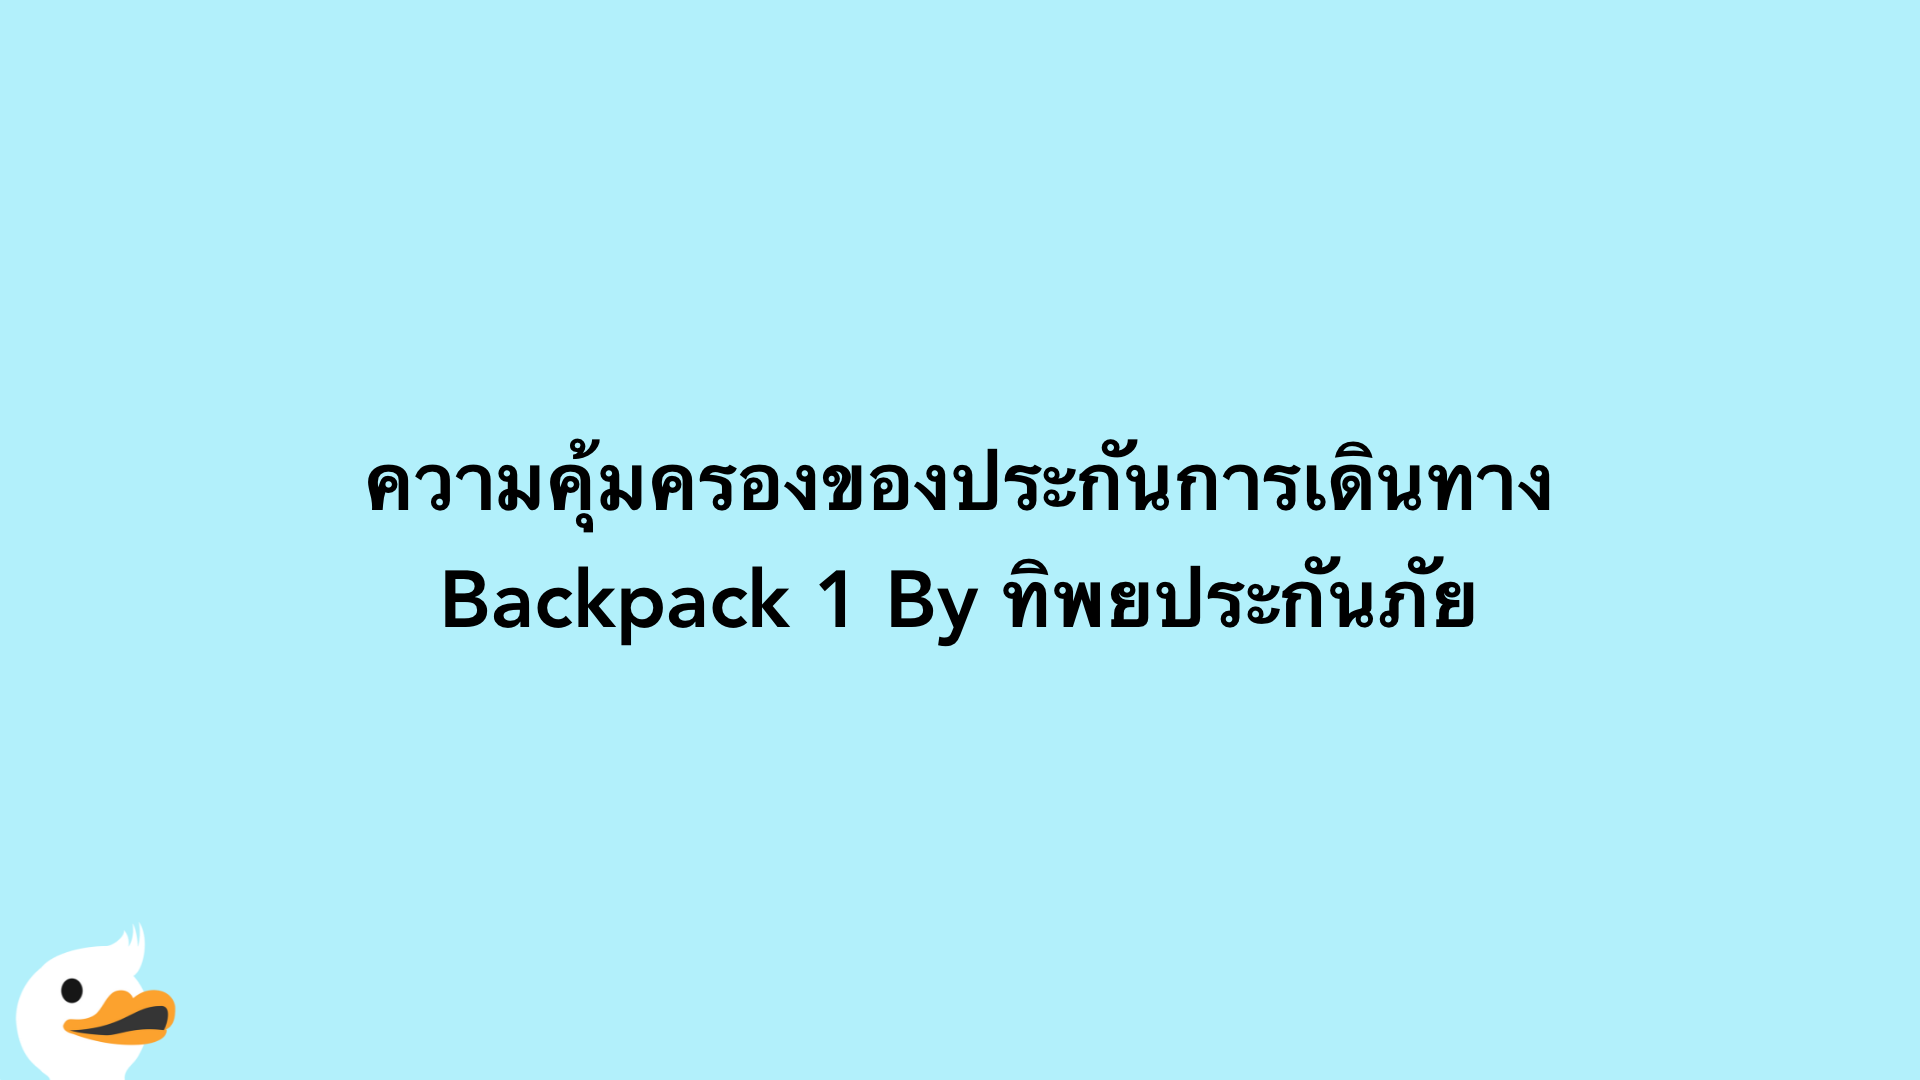 ความคุ้มครองของประกันการเดินทาง Backpack 1 By ทิพยประกันภัย